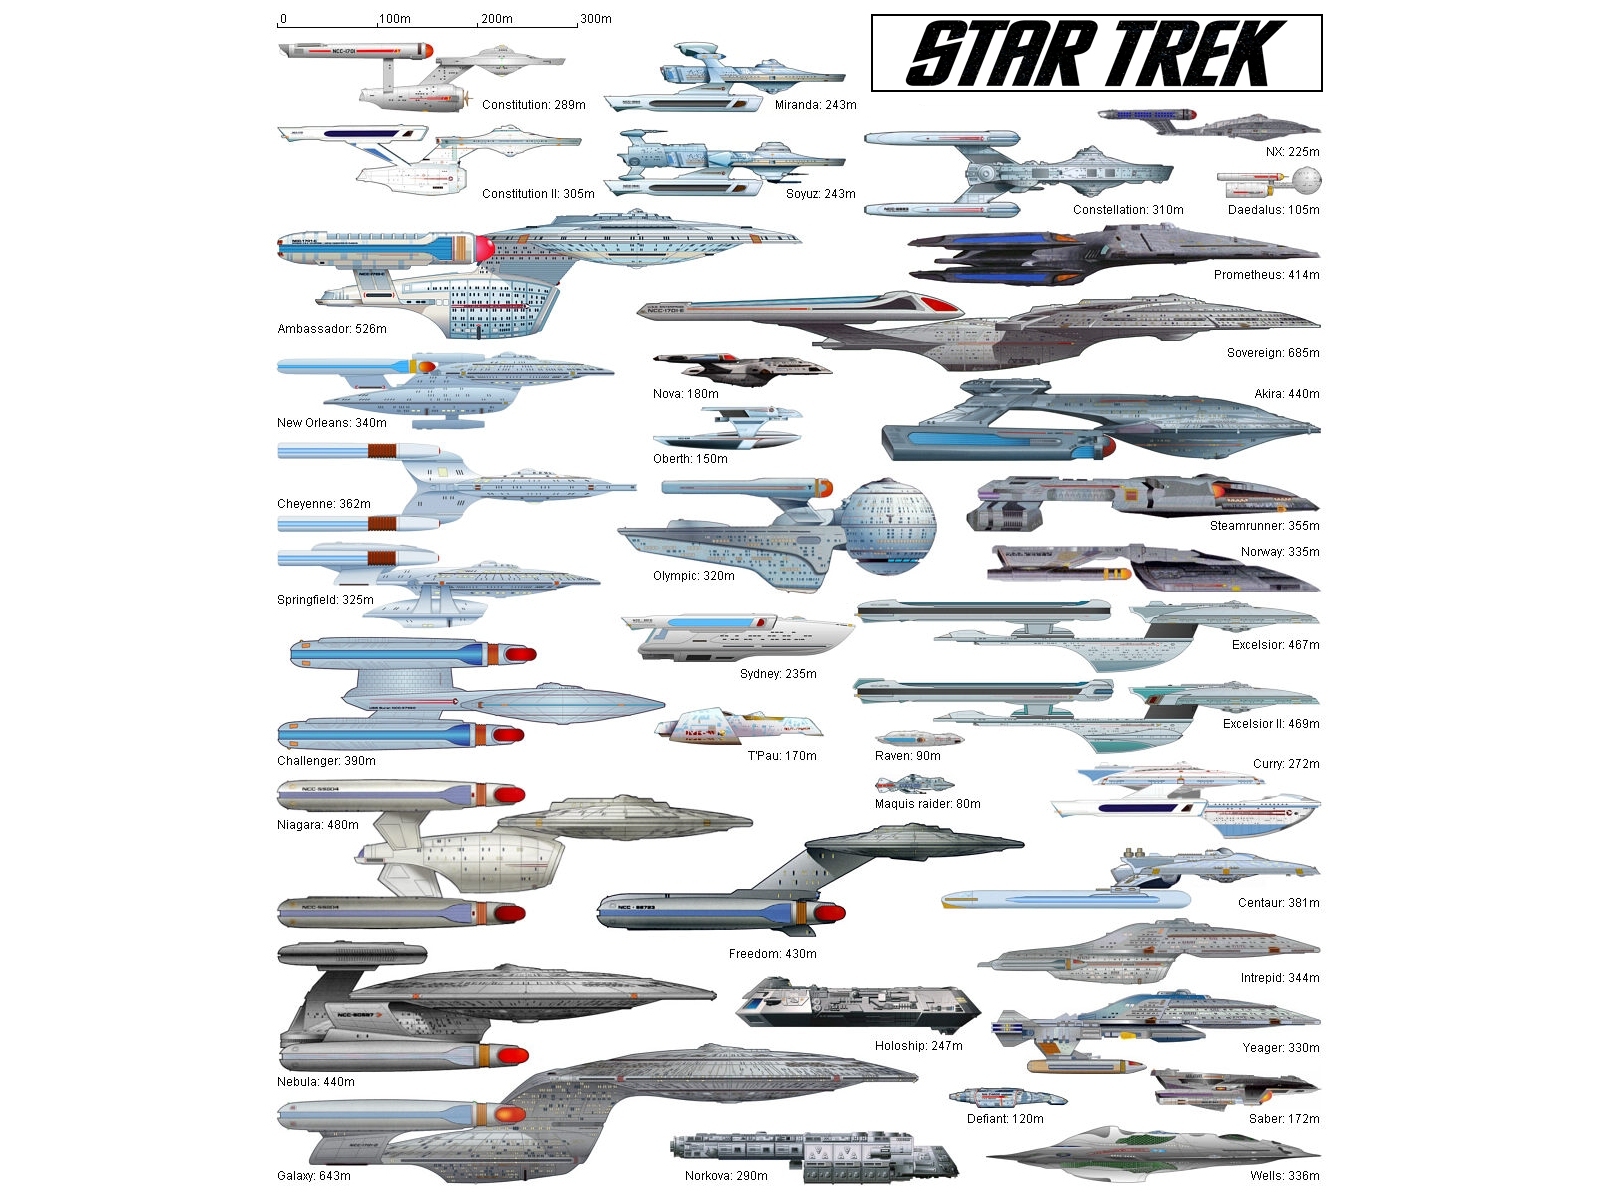 "Star Trek" desktop wallpaper number 8 - Starfleet's Ships of the Line #2 (1600 x 1200 pixels)